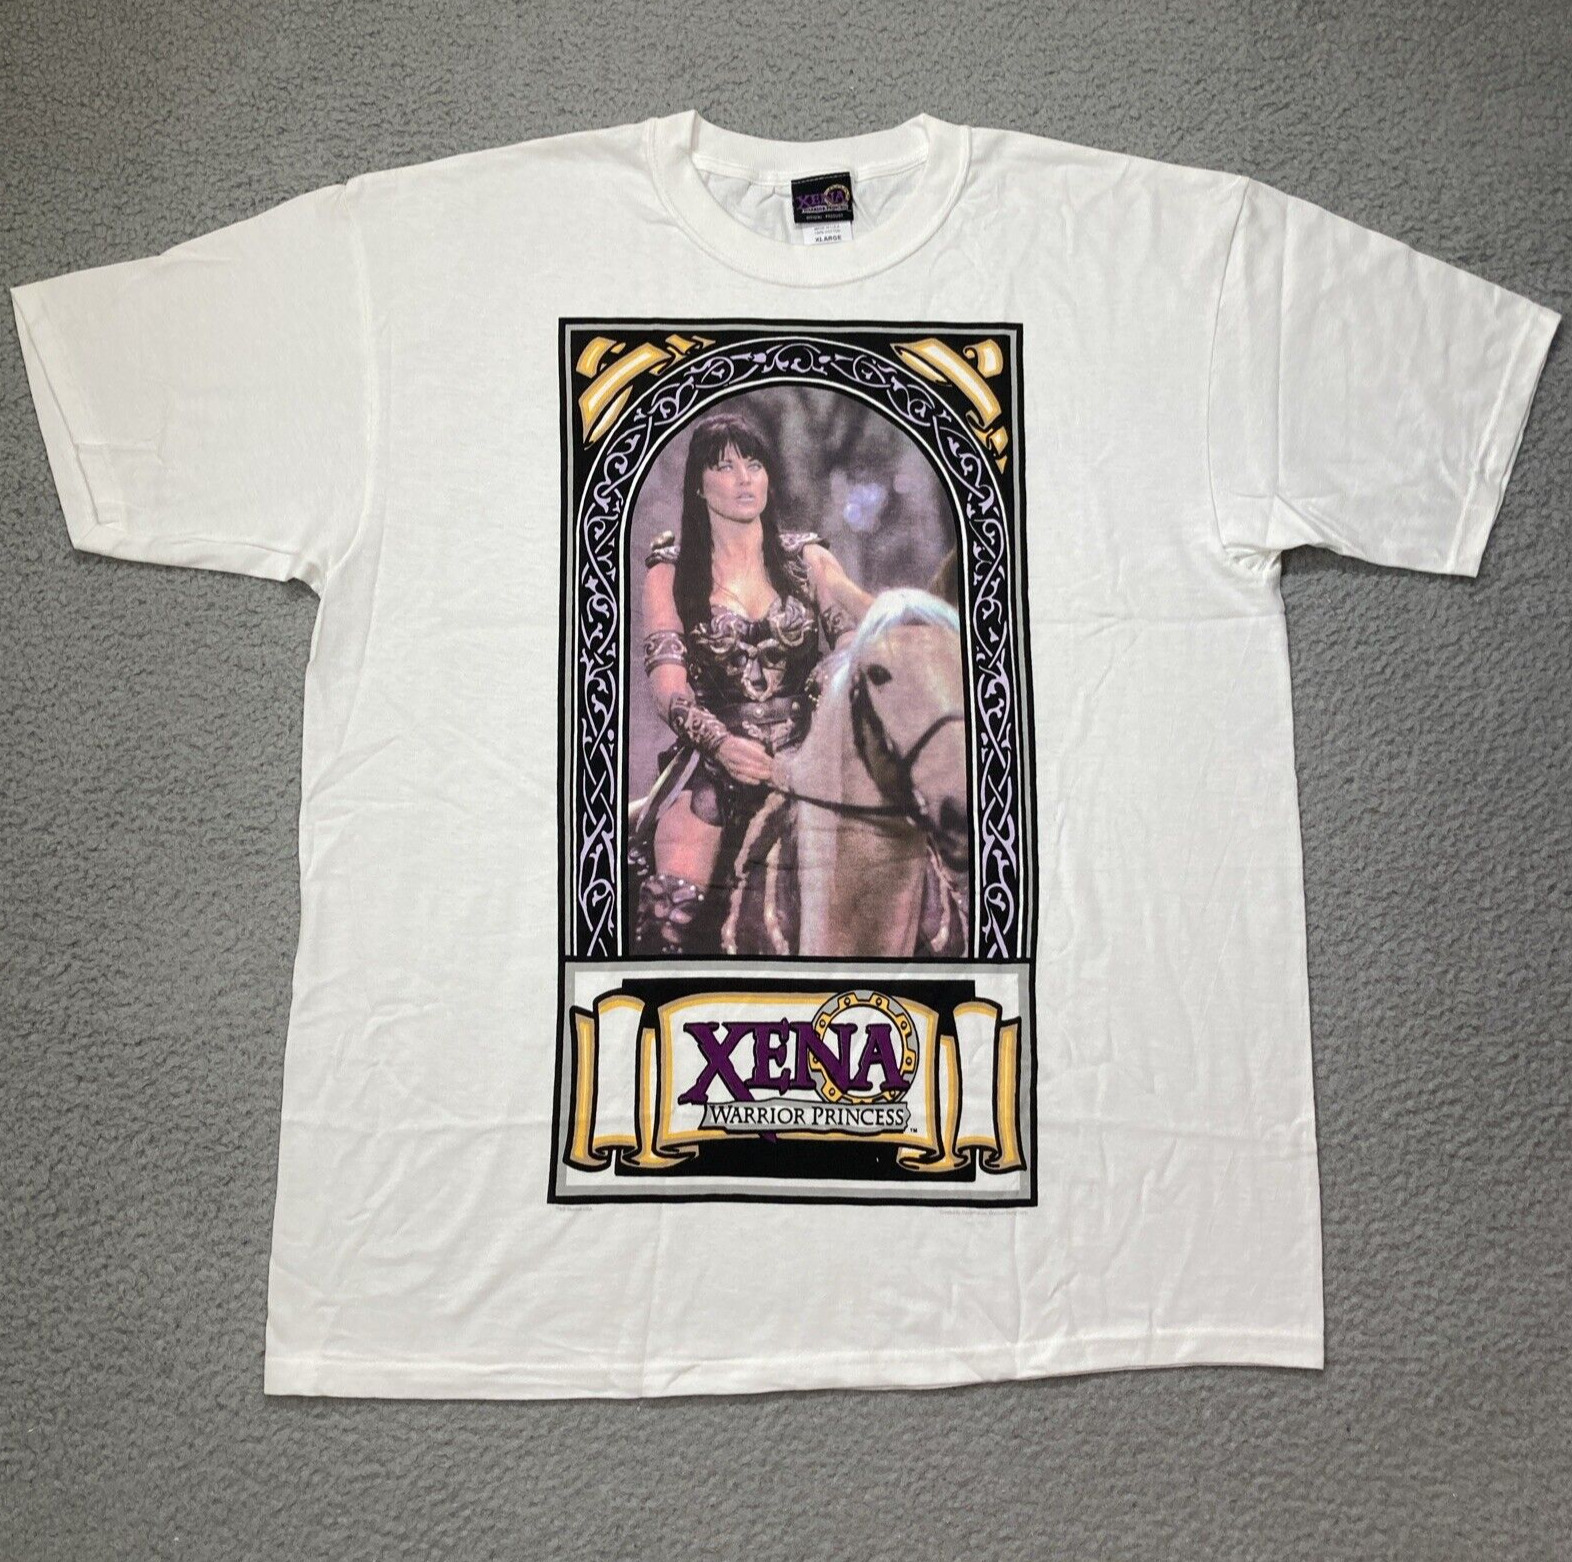 VTG 90s Xena Warrior Princess XL Graphic T Shirt White TV Promo USA Made MINT